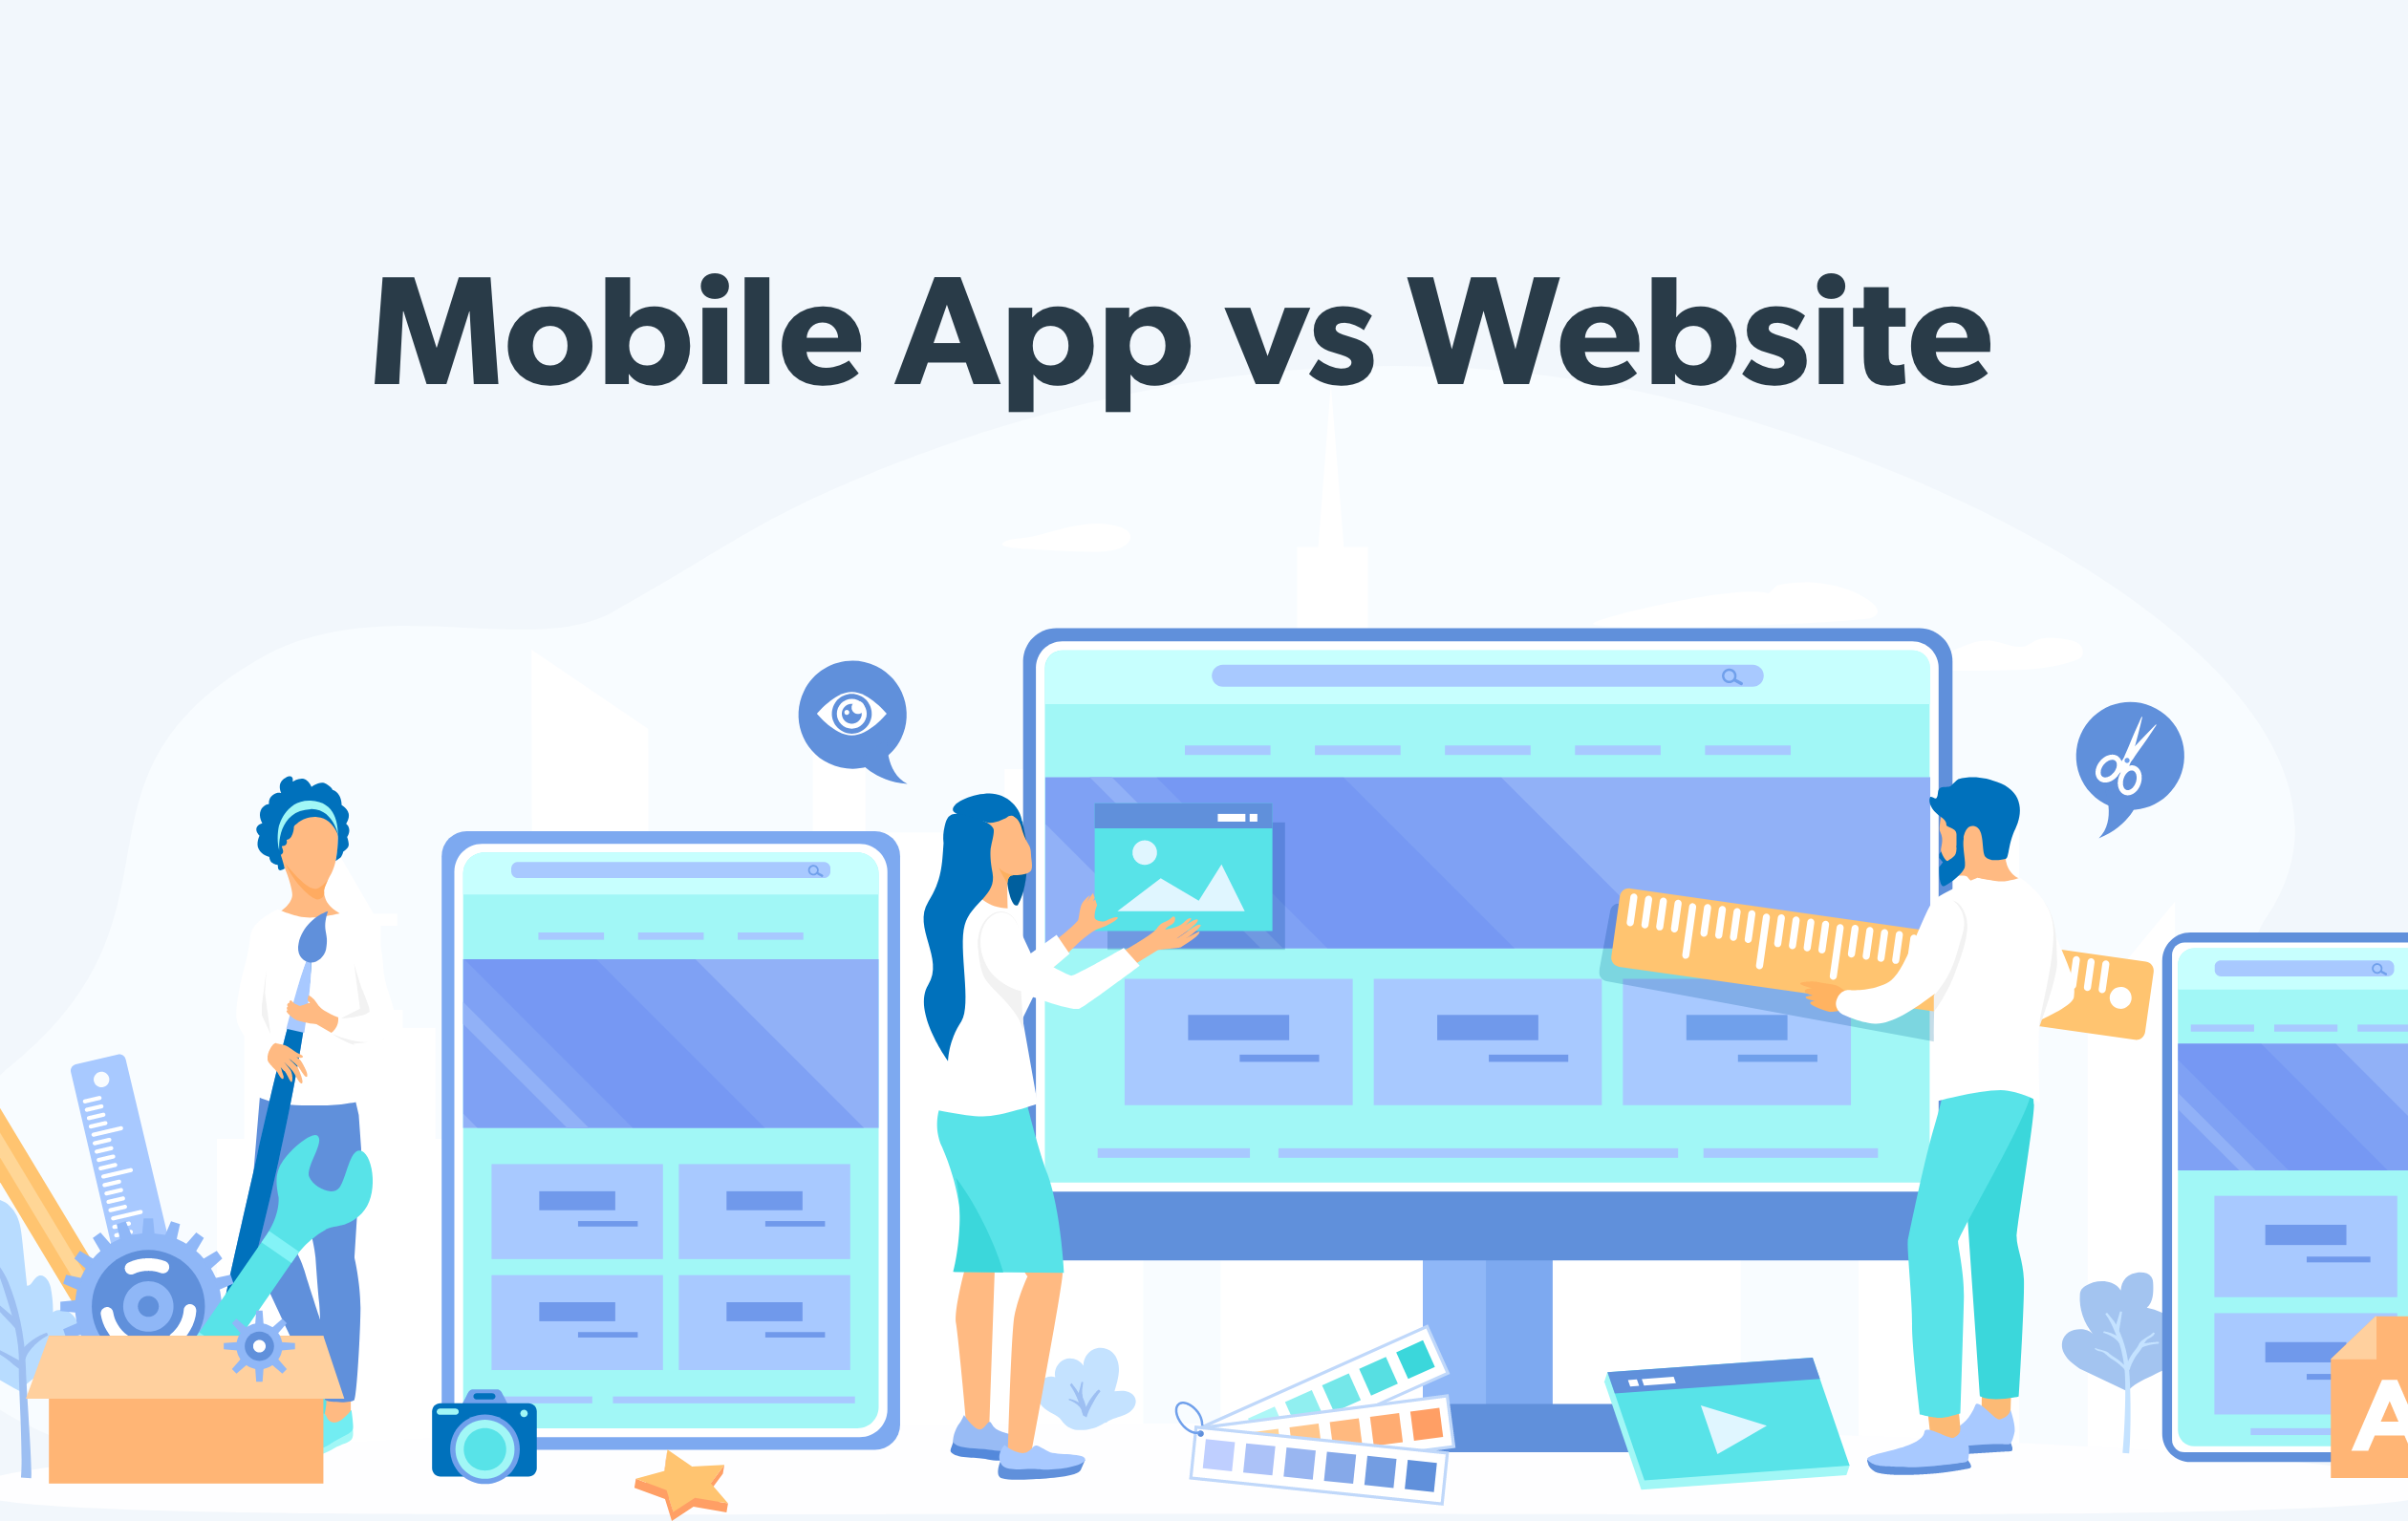 Mobile App vs Website illustration - figures build oversized mobile and desktop home pages